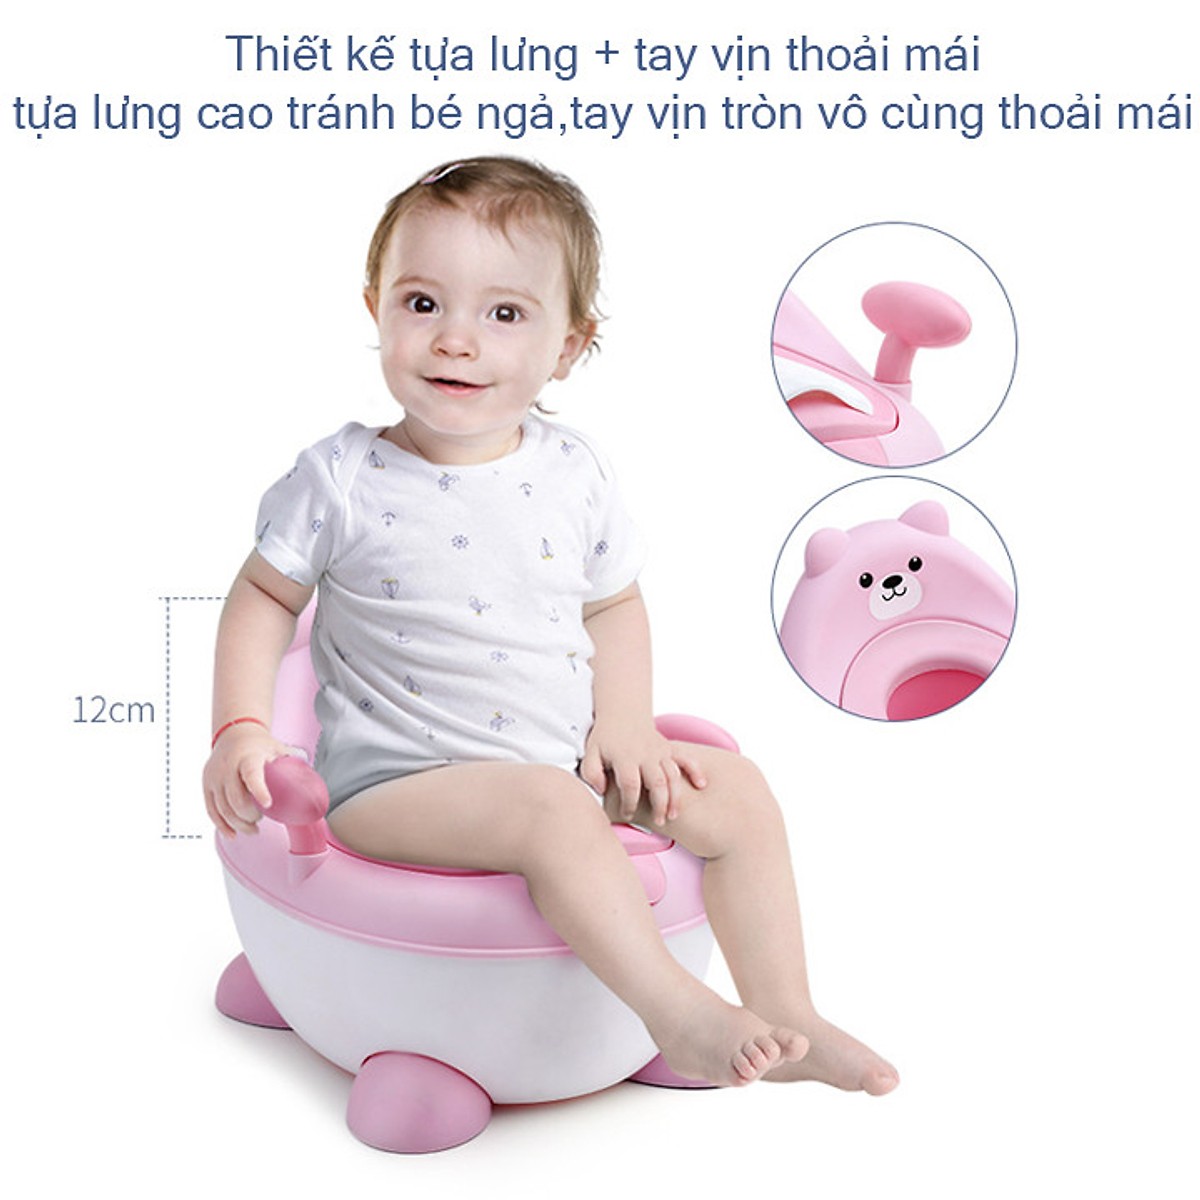 Bô vệ sinh trẻ em - Bệ ngồi toilet trẻ em - Bô trẻ em -Bô siêu xinh xắn cho baby